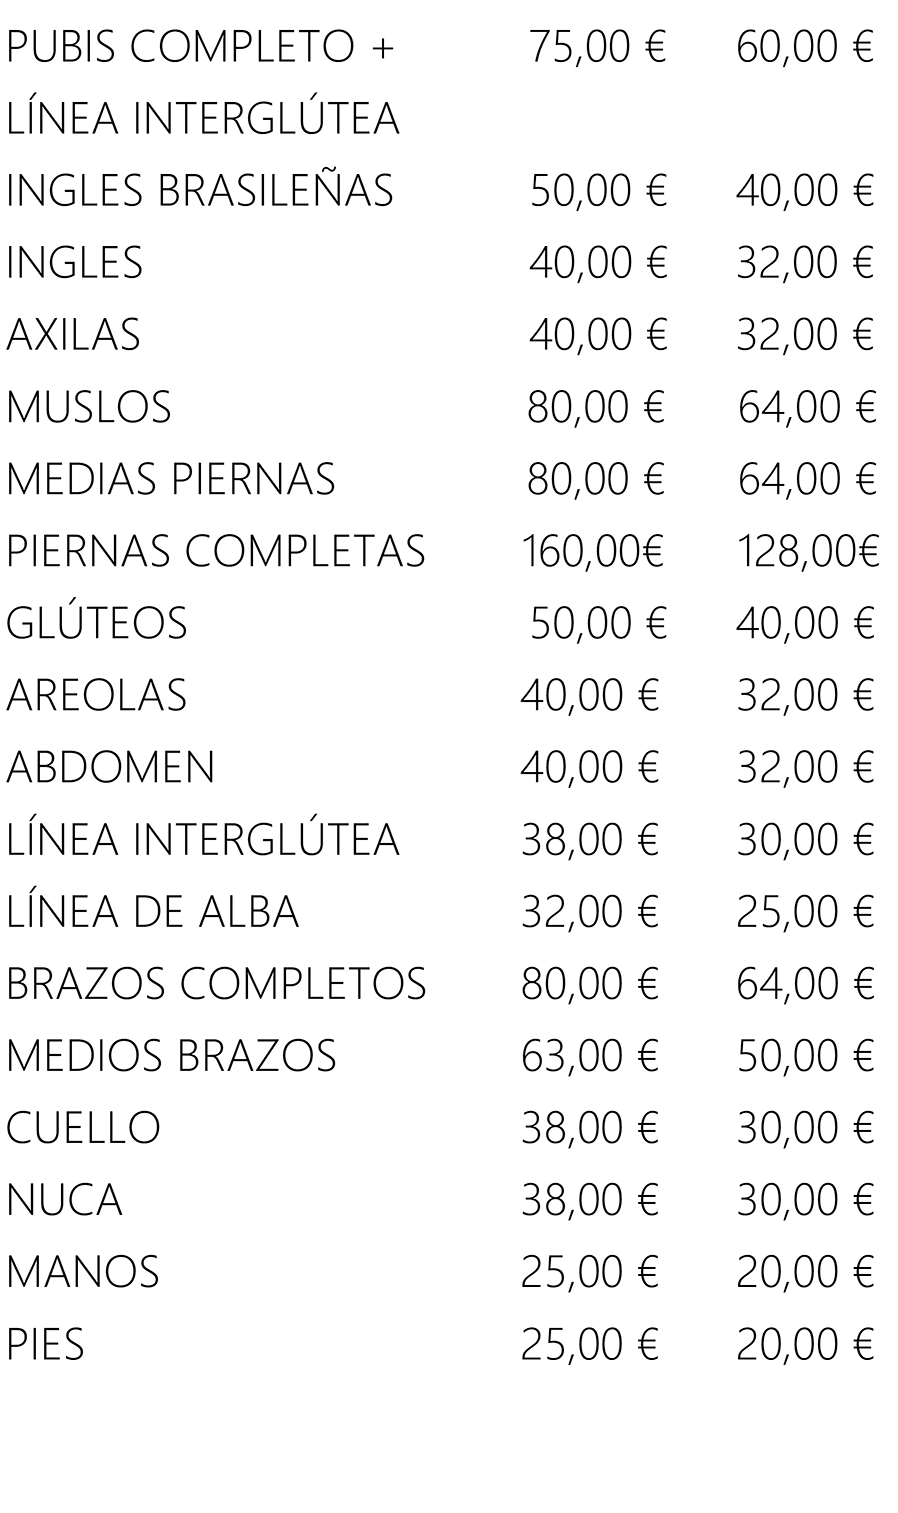 PUBIS COMPLETO + 
                LÍNEA INTERGLÚTEA 
                INGLES BRASILEÑAS 
                INGLES 
                AXILAS 
                MUSLOS 
                MEDIAS PIERNAS 
                PIERNAS COMPLETAS 
                GLÚTEOS 
                AREOLAS 
                ABDOMEN 
                LÍNEA INTERGLÚTEA 
                LÍNEA DE ALBA 
                BRAZOS COMPLETOS 
                MEDIOS BRAZOS 
                CUELLO 
                NUCA 
                MANOS 
                PIES 
                75,00 € 
                50,00 € 
                80,00 € 
                80,00 € 
                160,00€ 
                50,00 € 
                38,00 € 
                32,00 € 
                80,00 € 
                63,00 € 
                38,00 € 
                38,00 € 
                25,00 € 
                25,00 € 
                60,00 € 
                32/00 € 
                32,00 € 
                64,00 € 
                64,00 € 
                128,00€ 
                40,00 € 
                32,00 € 
                32,00 € 
                30,00 € 
                25,00 € 
                64,00 € 
                50,00 € 
                30,00 € 
                30,00 € 
                20,00 € 
                20,00 € 